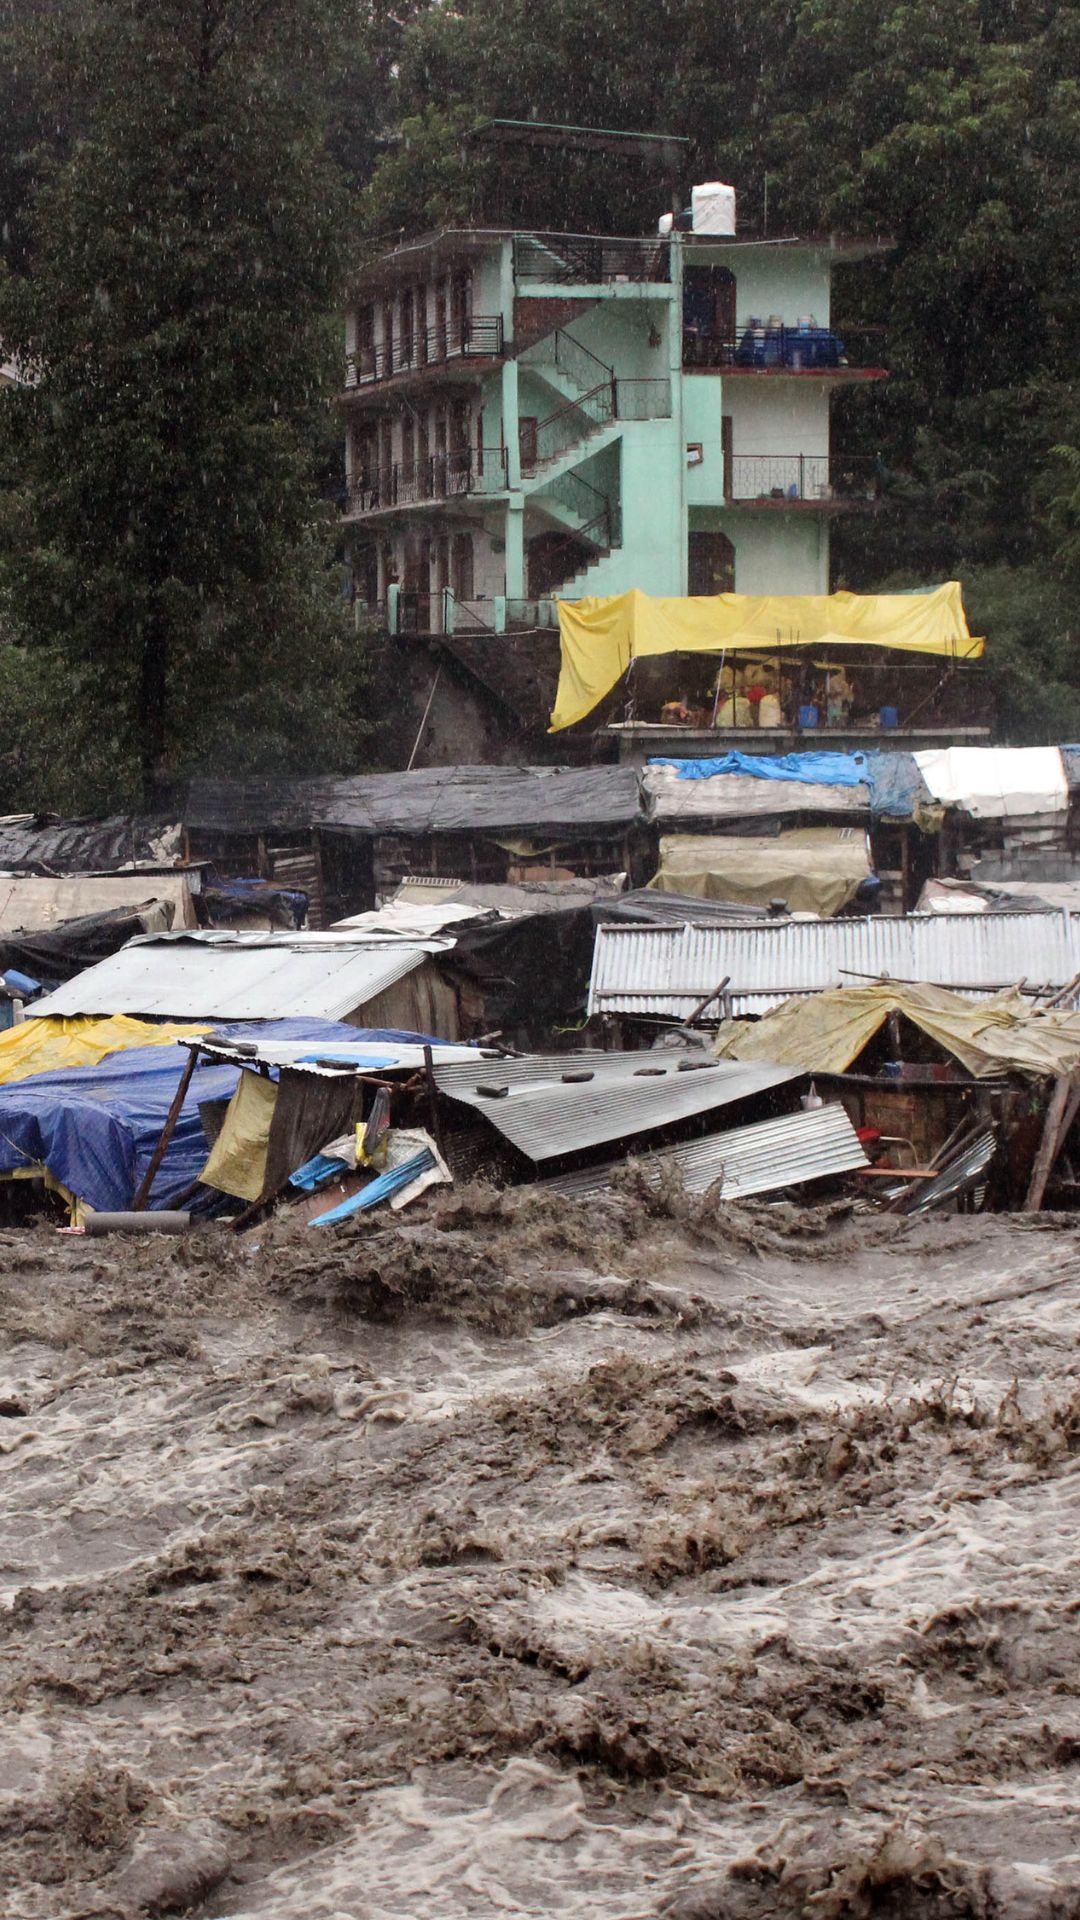 दिल्ली-एनसीआर समेत देशभर में बारिश ने मचाई भारी तबाही, रह जाएंगे दंग (तस्वीर- कुल्लू, हिमाचल प्रदेश)